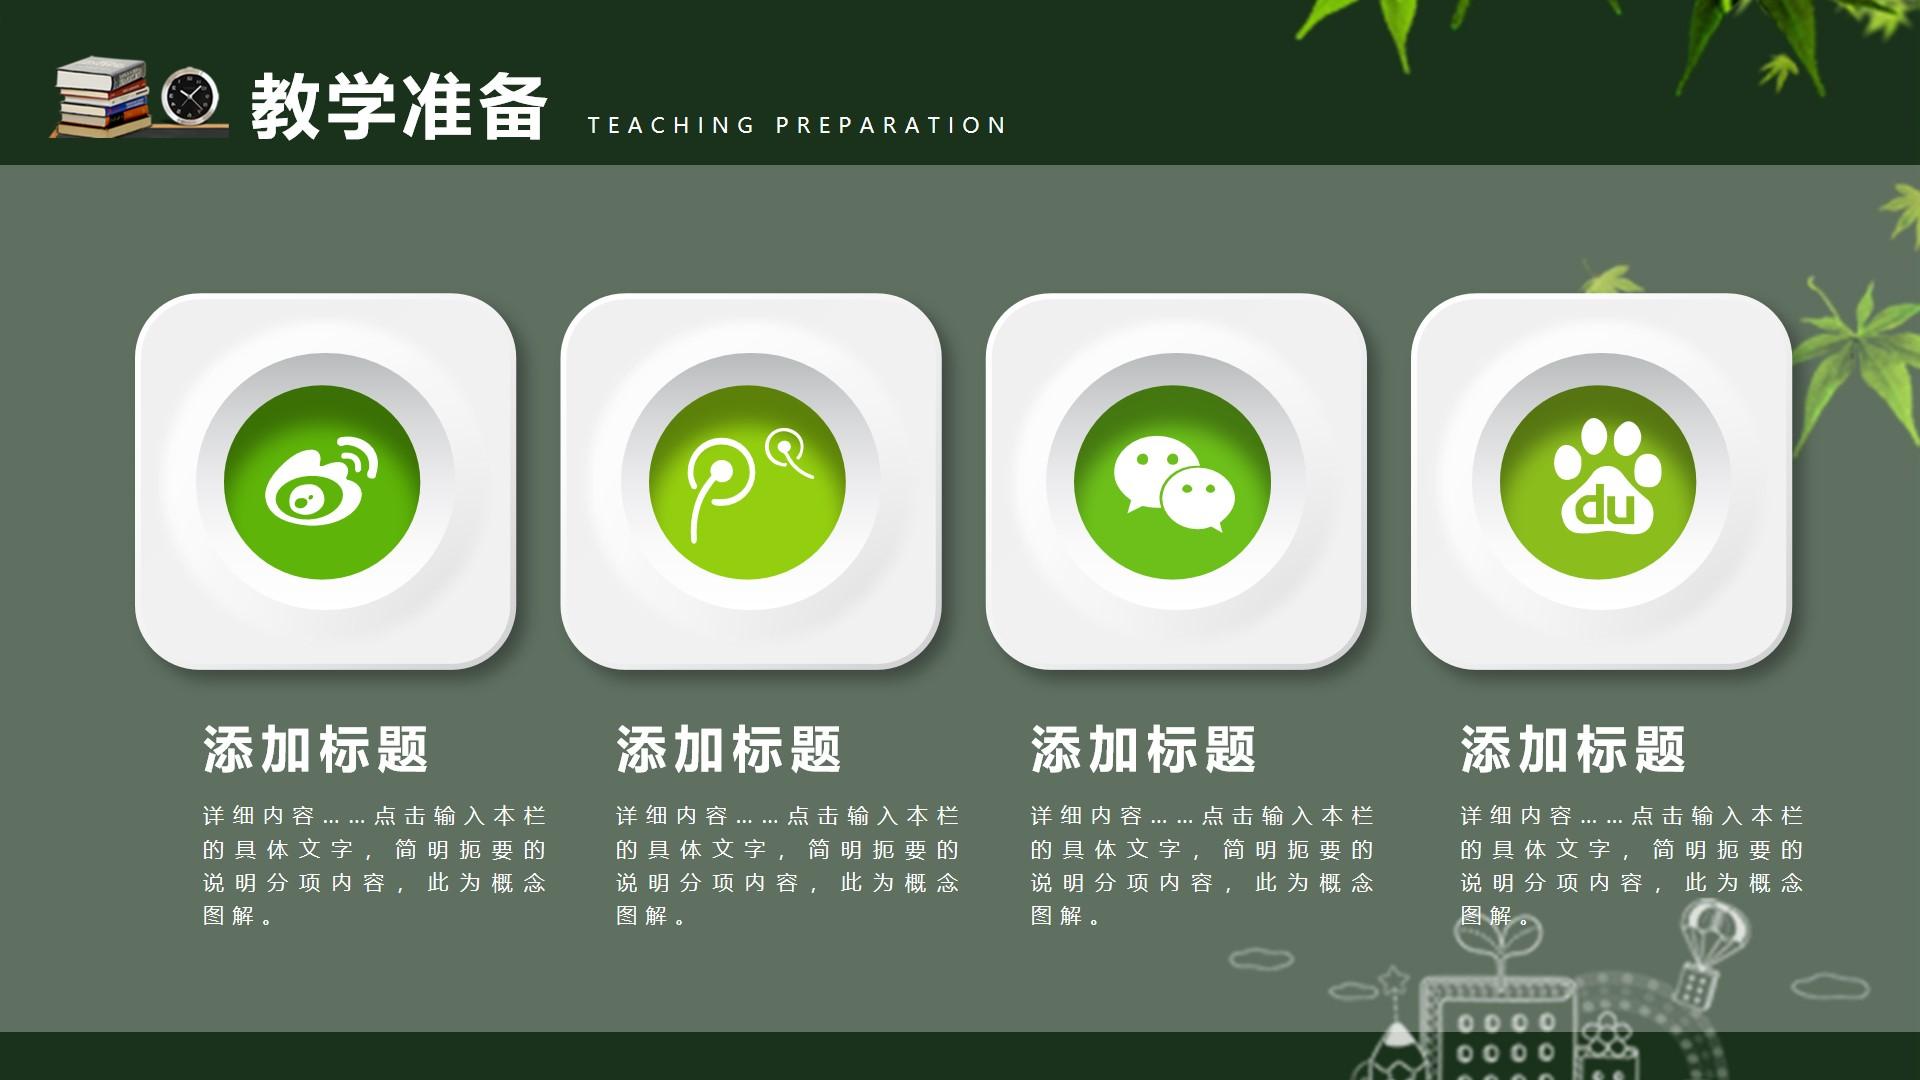 教育教学绿色白色实景卡通概念 teaching preparation 图解云素材PPT模板1672664114734